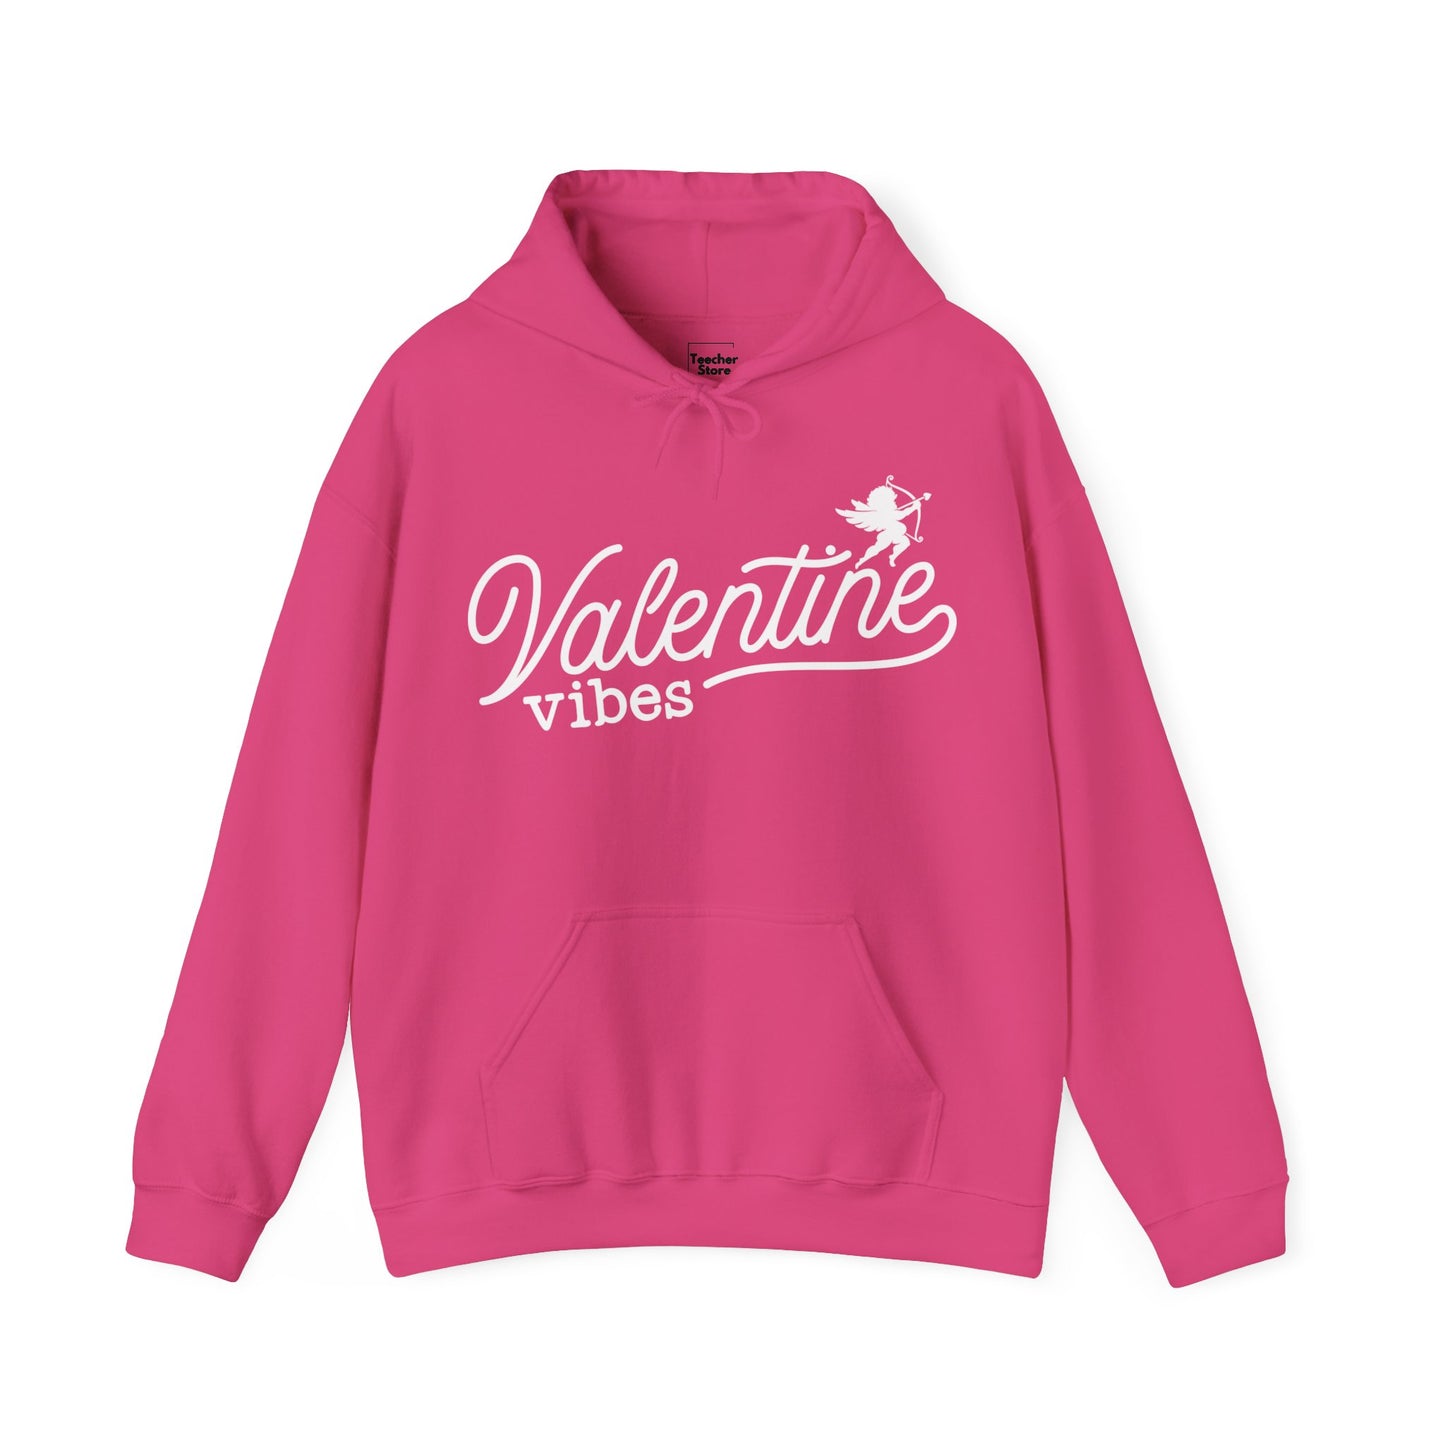 Valentine Vibes Hooded Sweatshirt